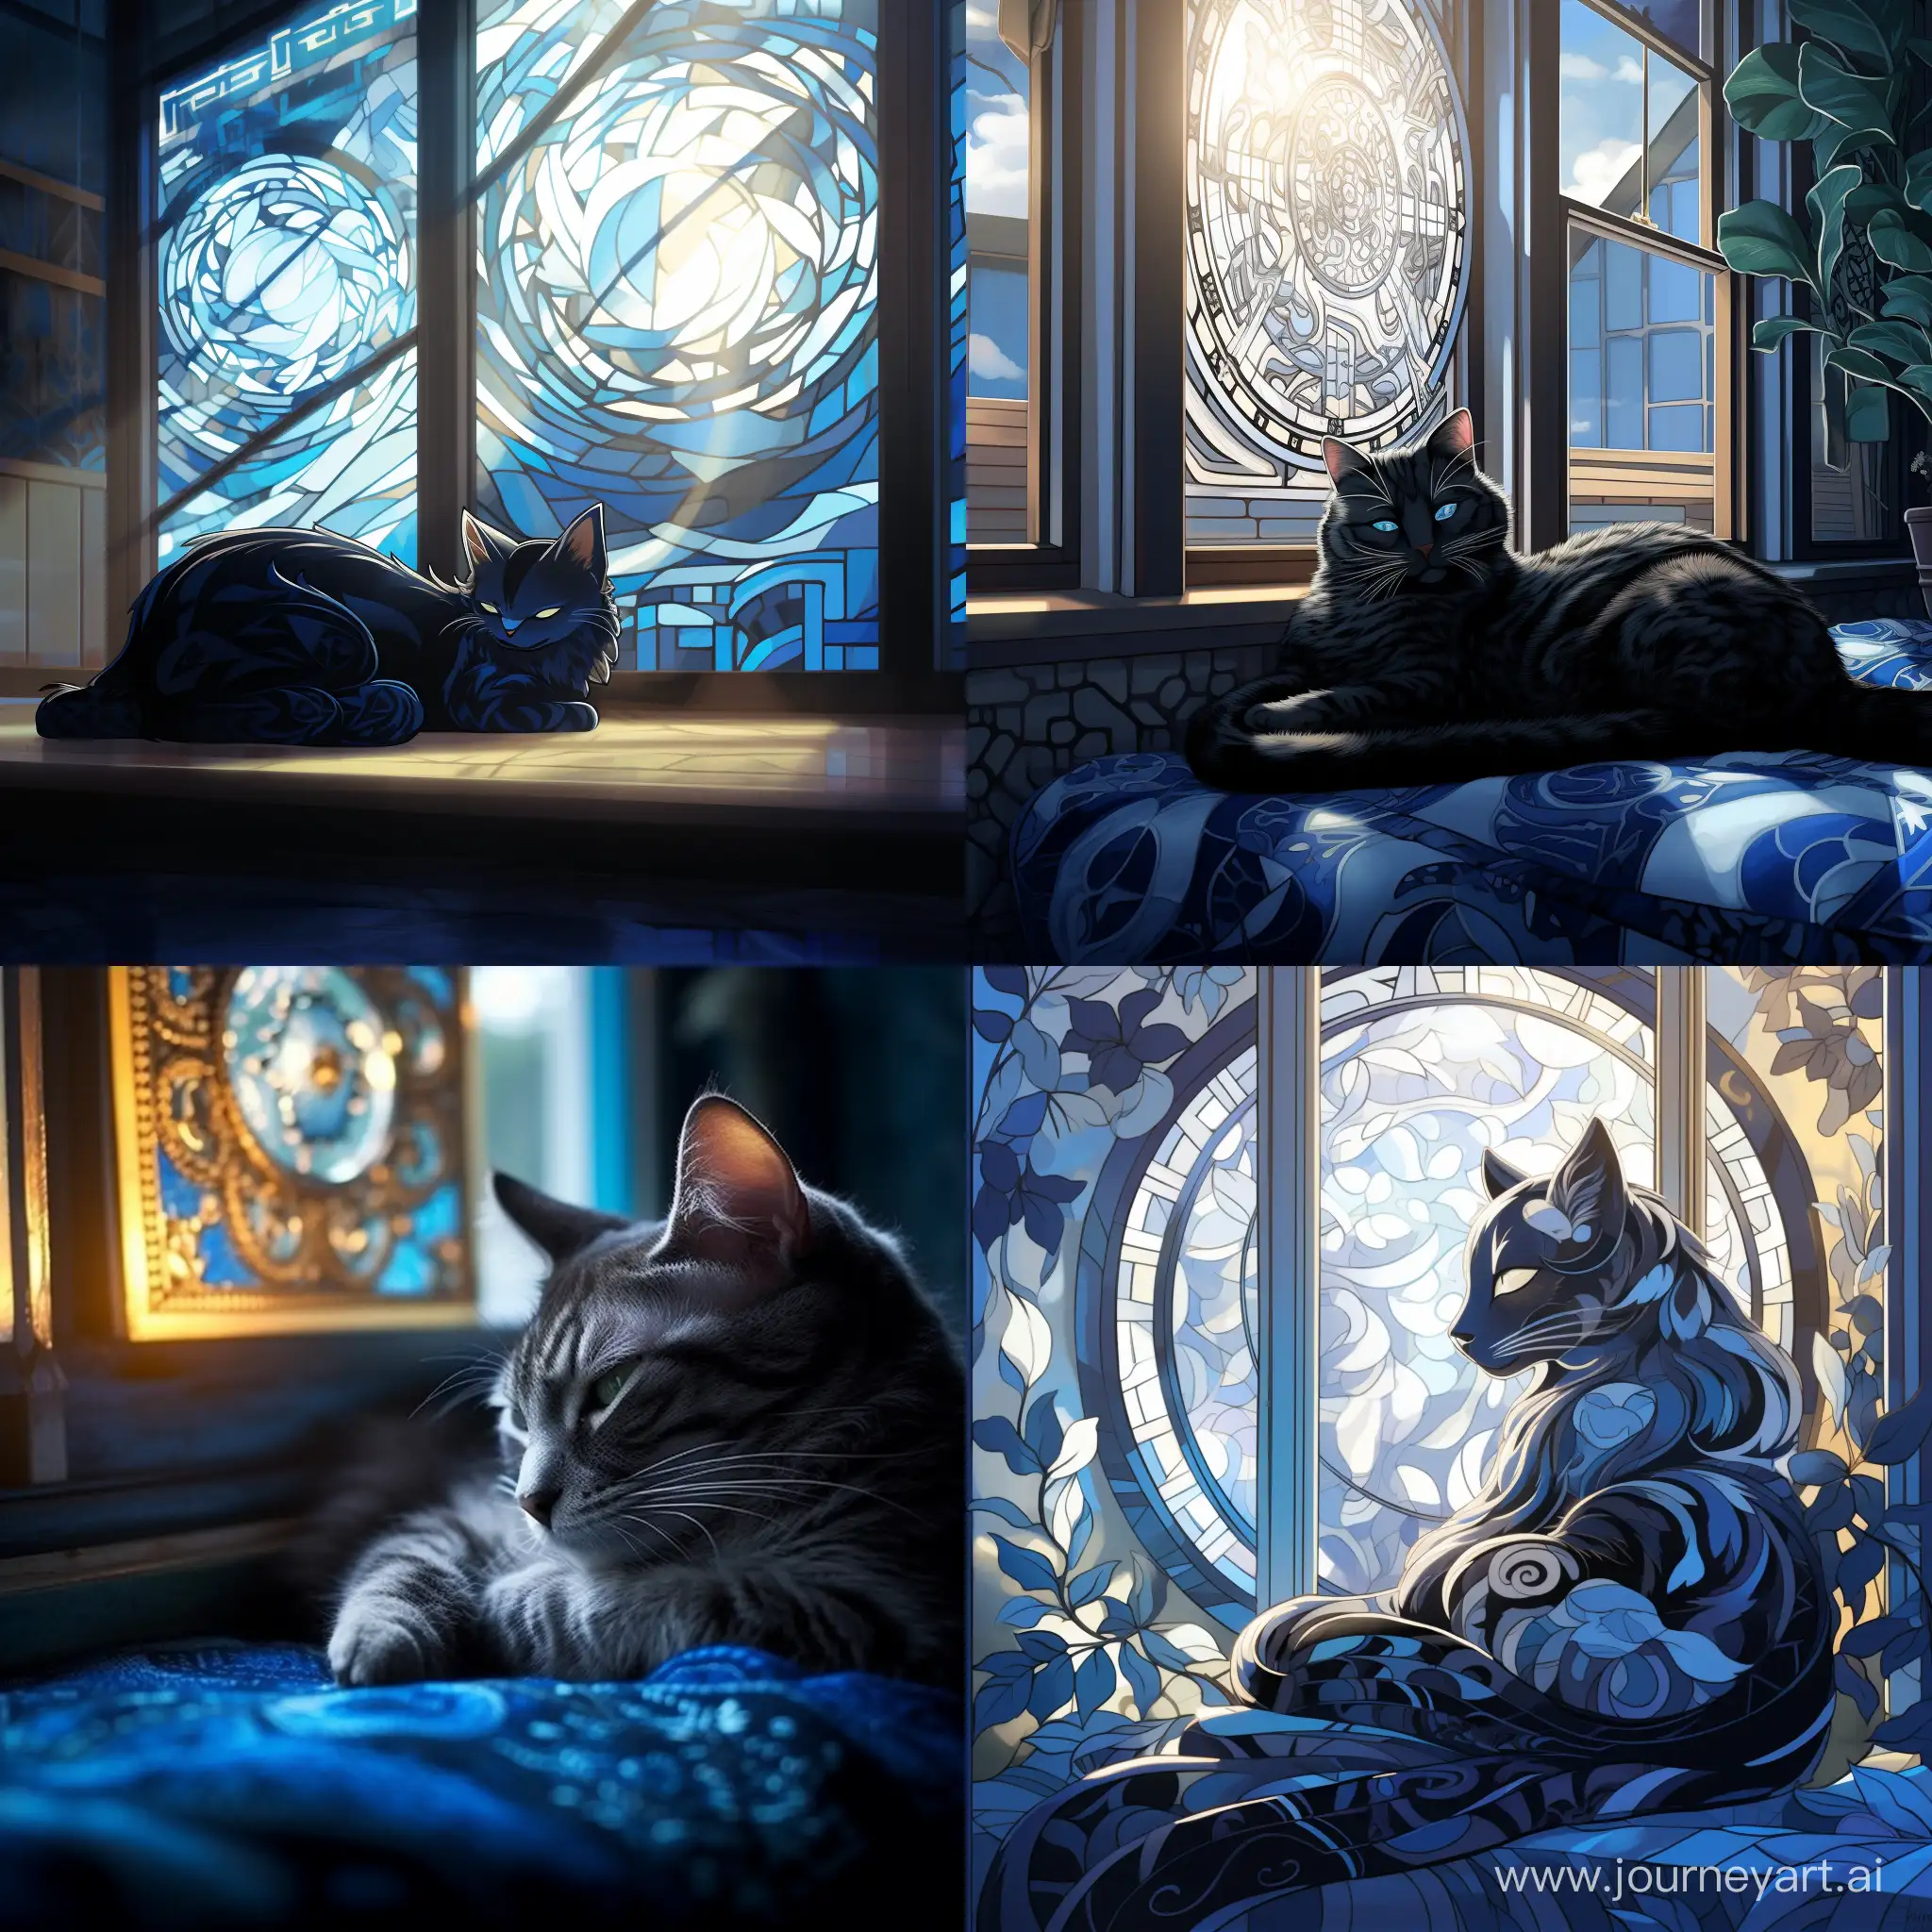 Стиль инь янь, голубая кошка с черными узорами лениво разлеглась на фоне окна, мягкий свет проникает через окна отбрасывая блики на кошку, стиль инь янь